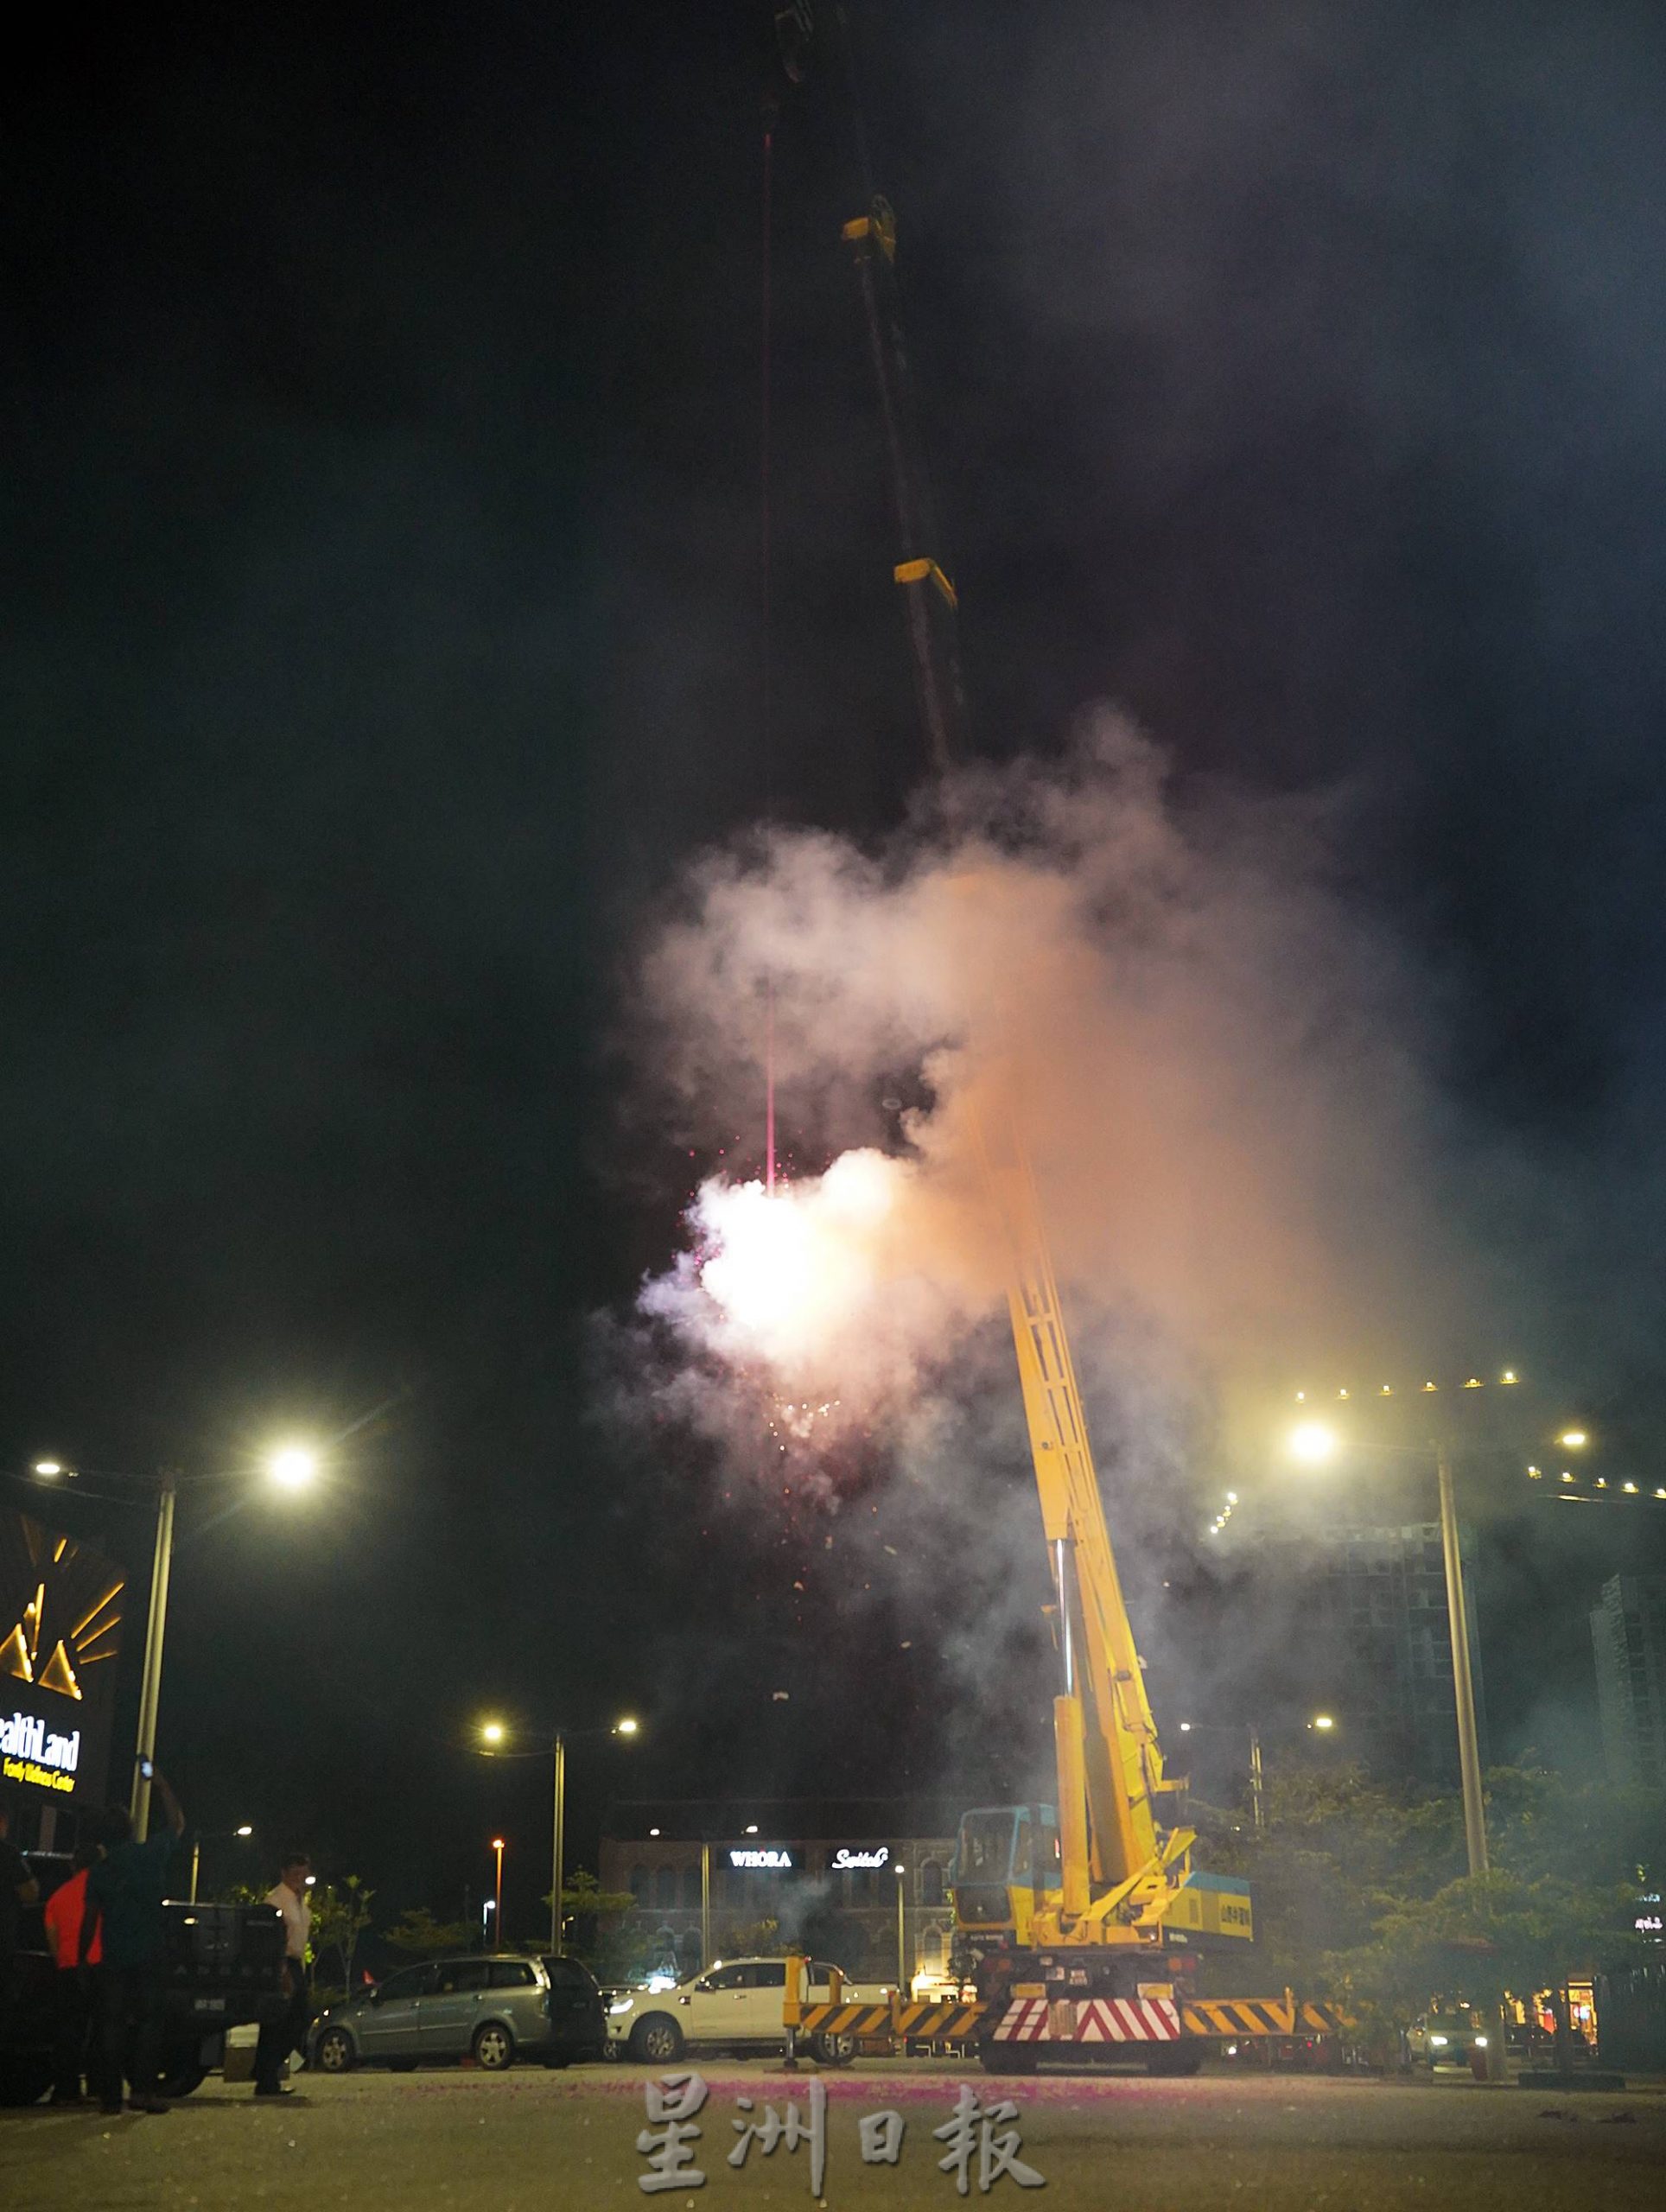 （古城封面副文）希盟支持者点燃138尺红炮及燃放烟花，庆祝希盟在甲市区的胜利